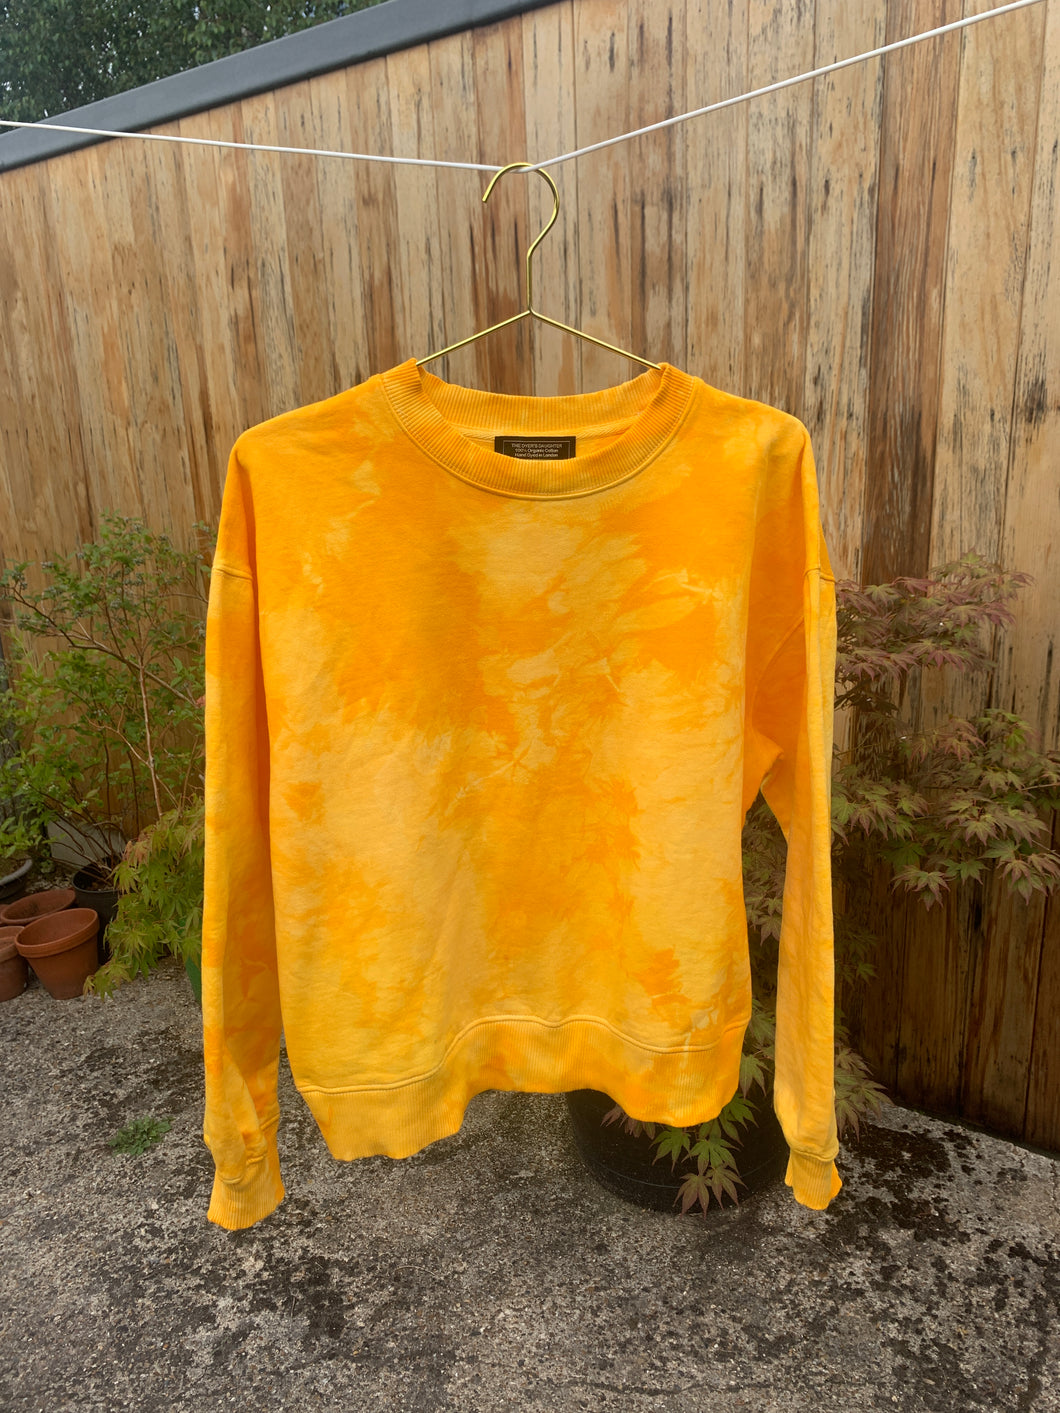 YOLK Premium Organic Hand-dyed Sweatshirt